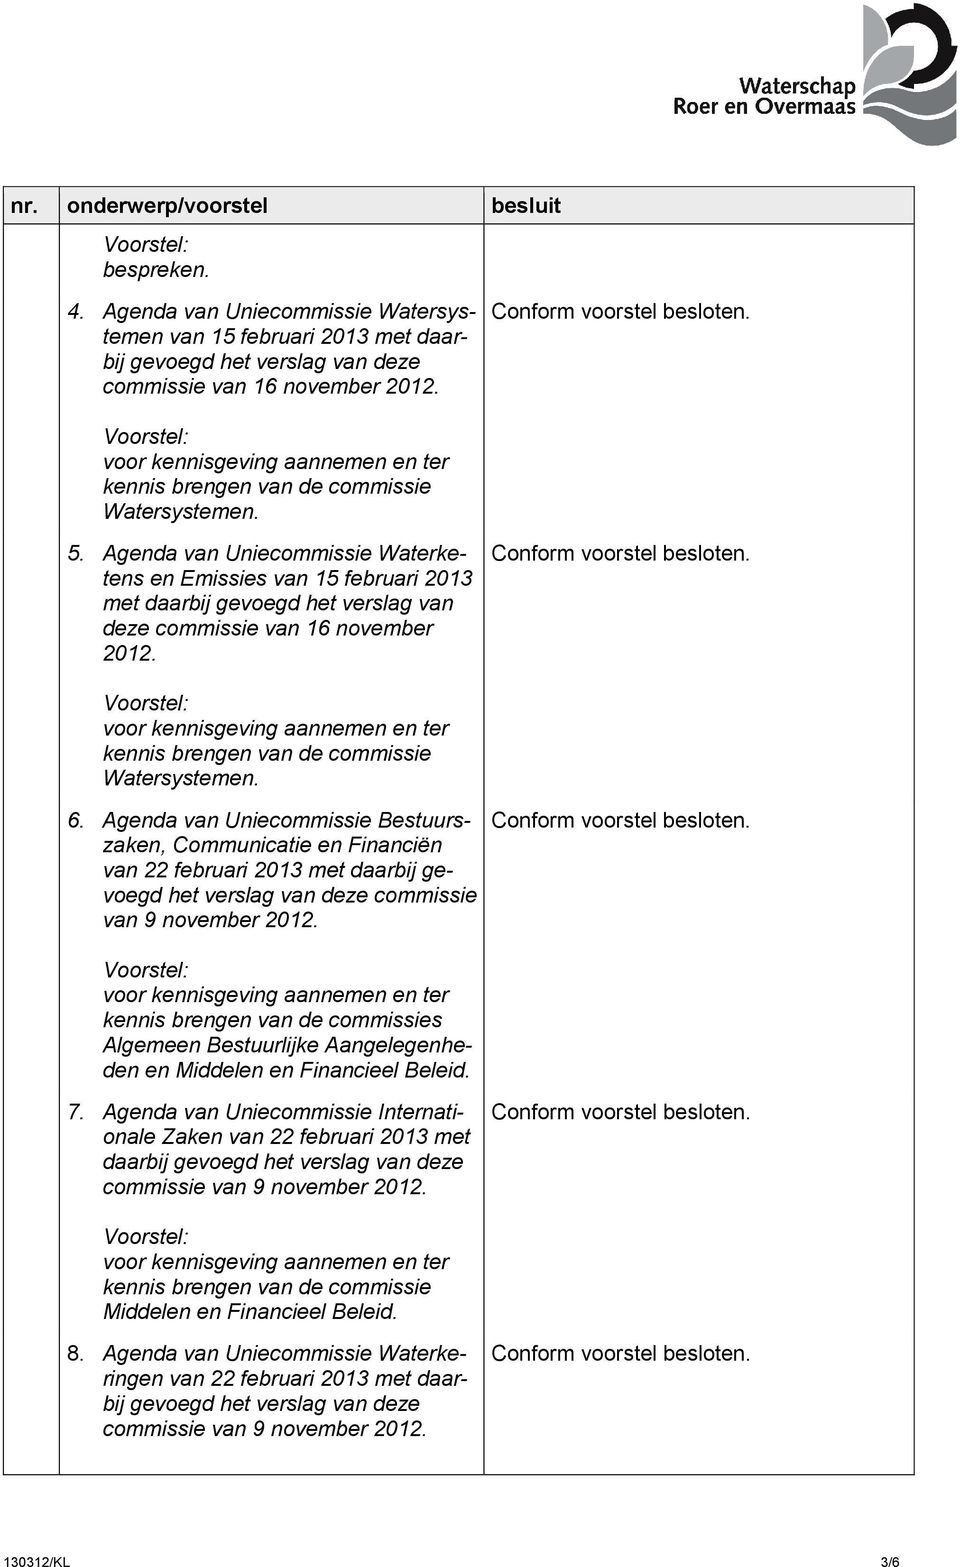 Agenda van Uniecommissie Bestuurszaken, Communicatie en Financiën van 22 februari 2013 met daarbij gevoegd het verslag van deze commissie van 9 november 2012.